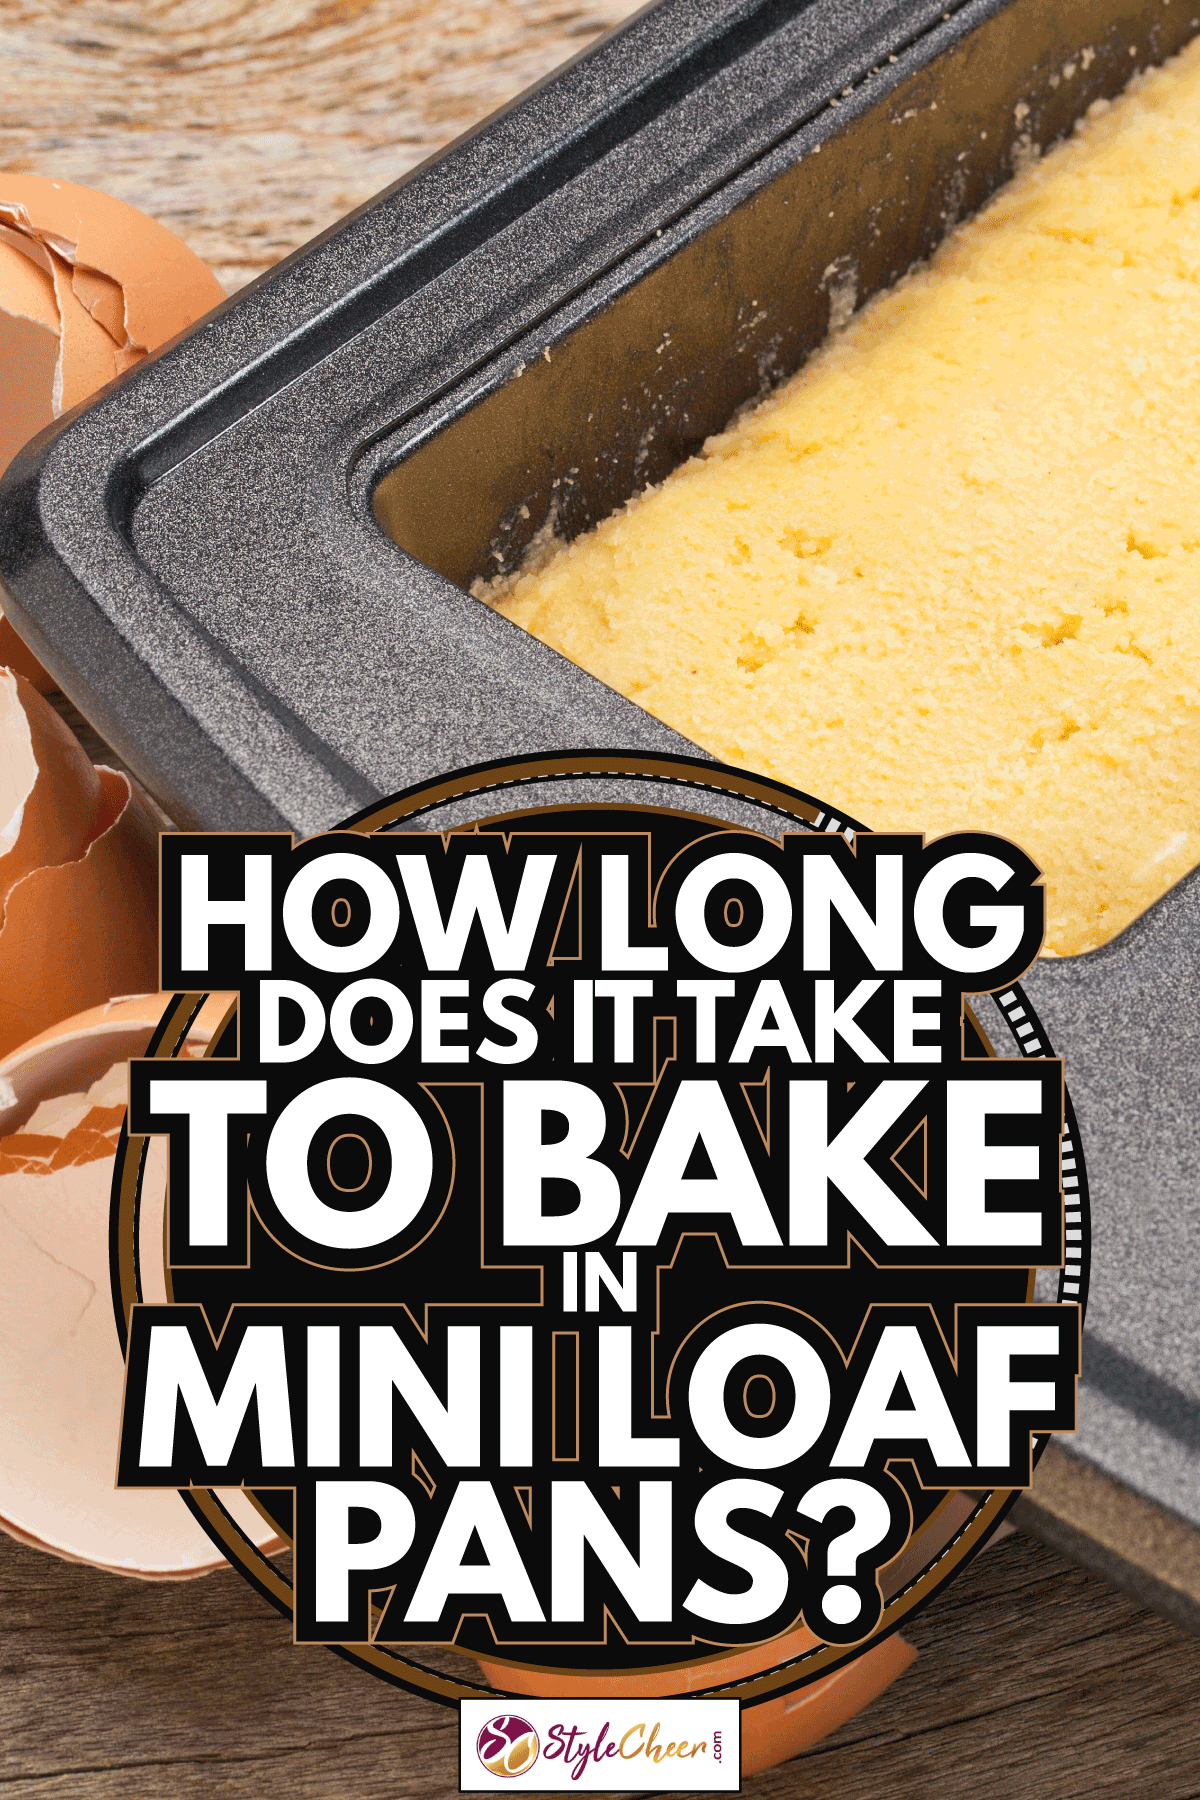 椰子面包面粉面包面团。在迷你面包盘里烤面包需要多长时间